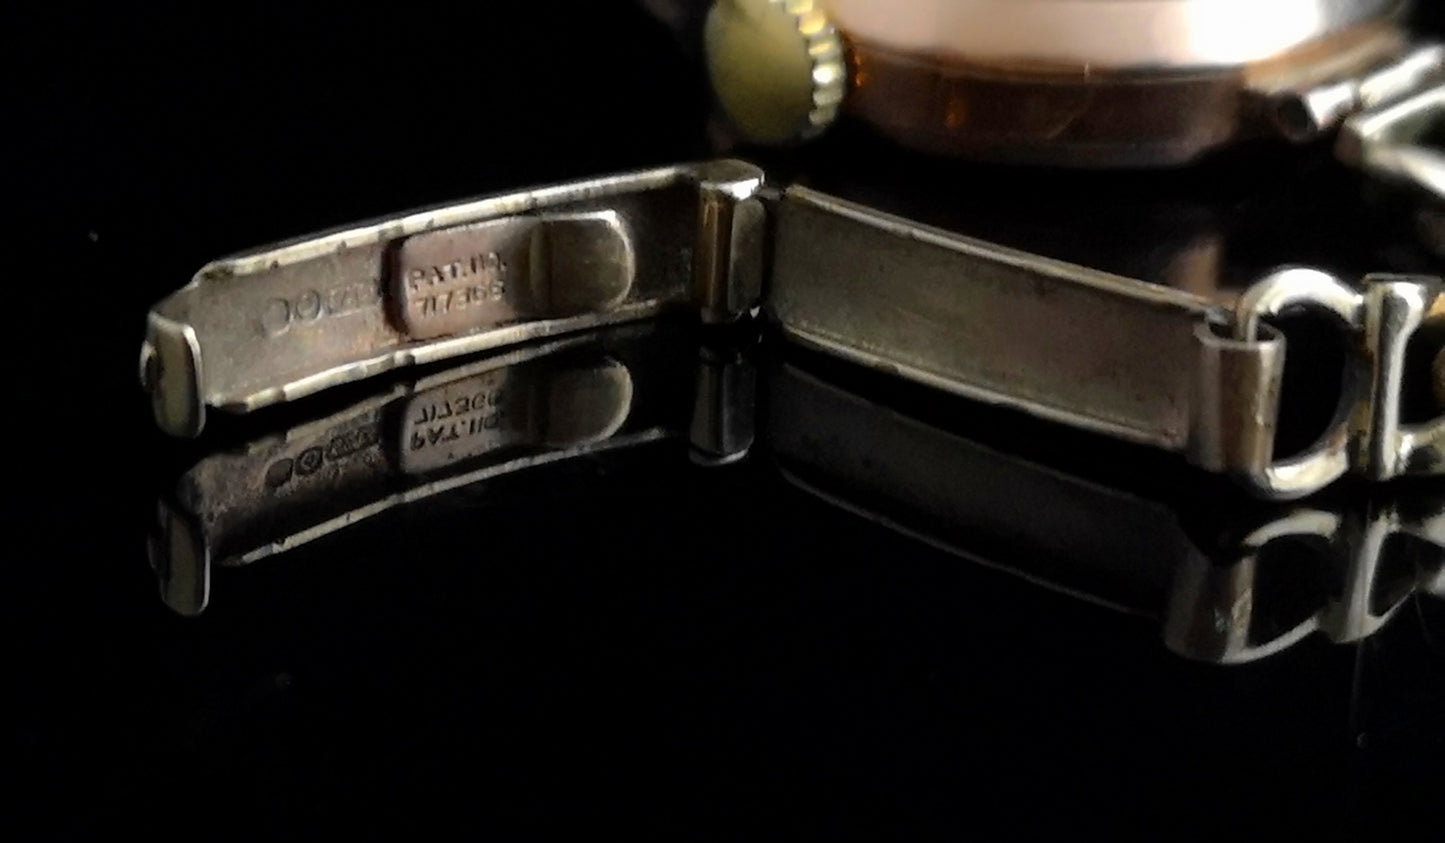 Vintage 9ct gold ladies wristwatch, 1950's, curb bracelet